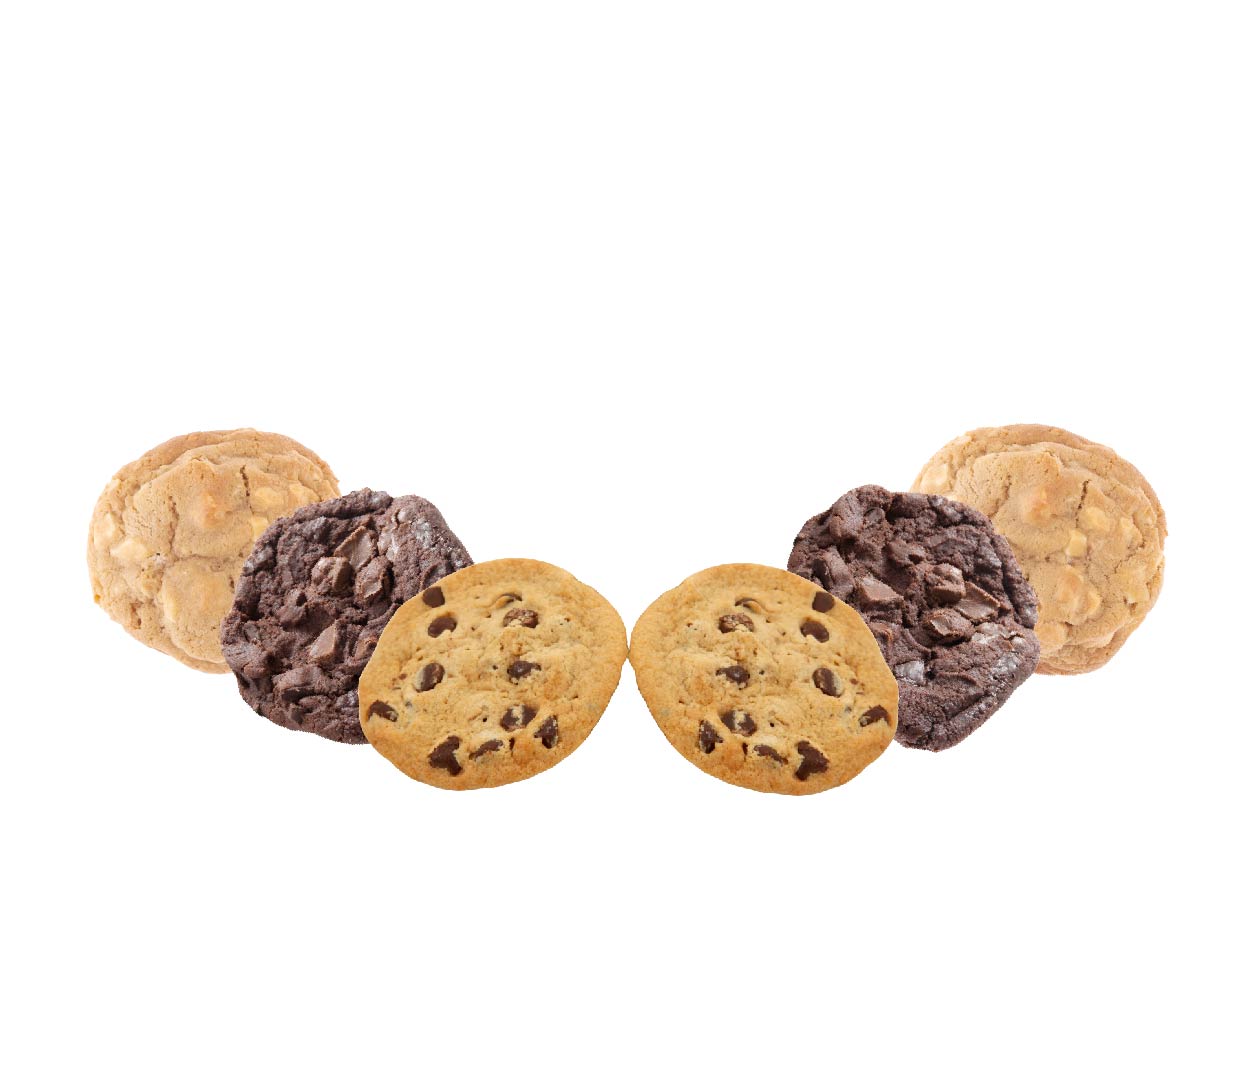 One Smart Cookie - Half Dozen